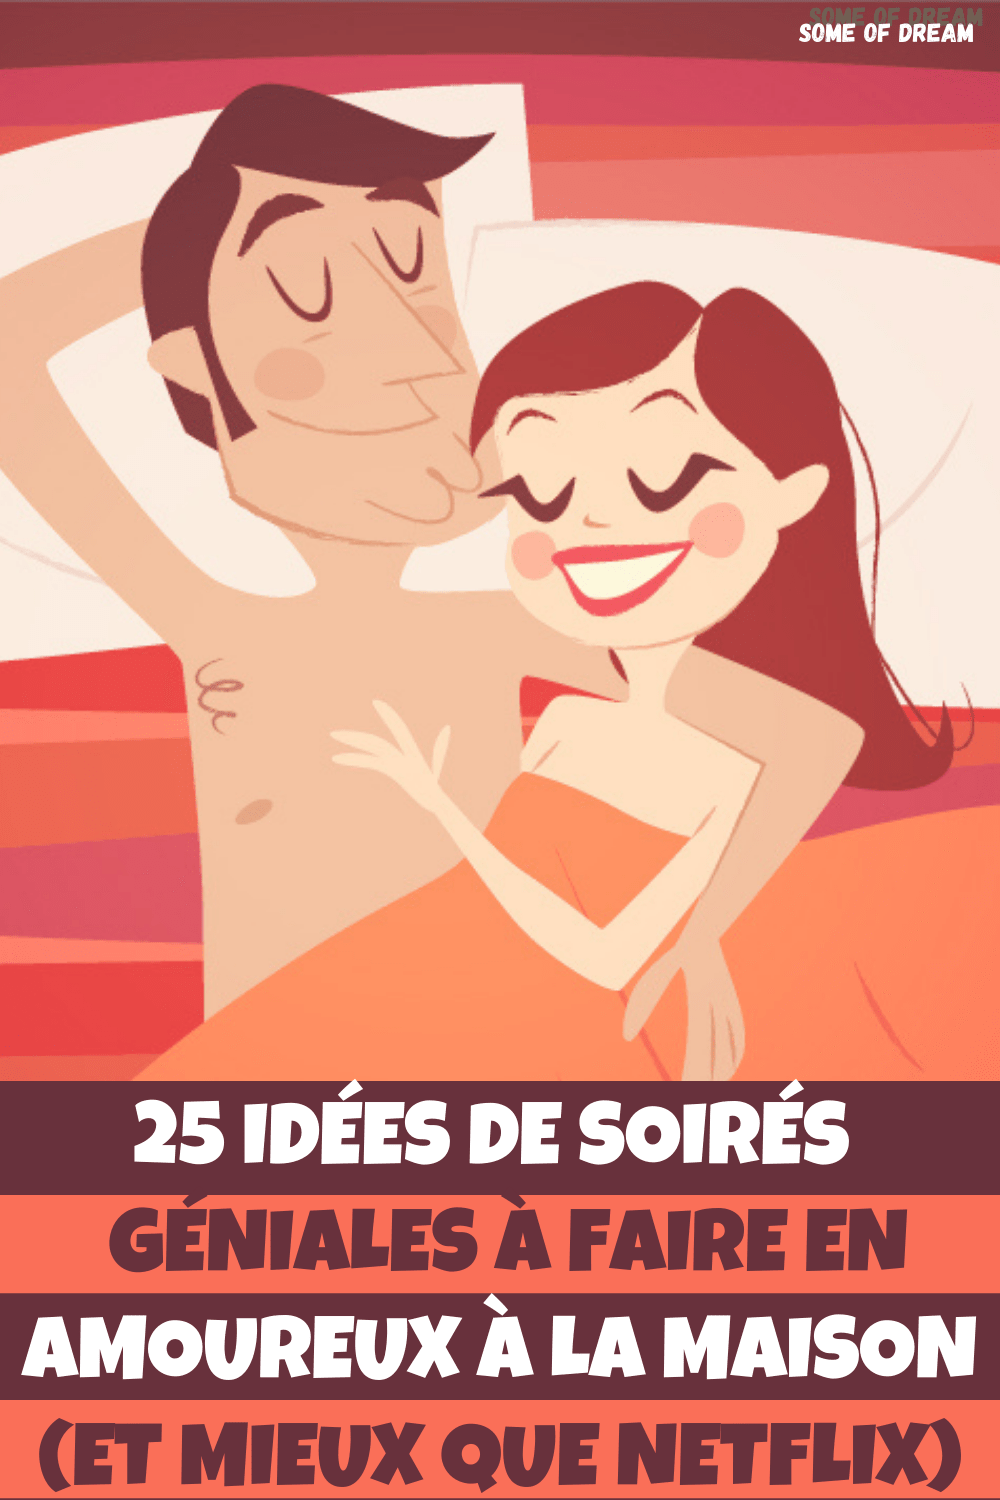 25 idées de soirées géniales à faire en amoureux (et mieux que Netflix)